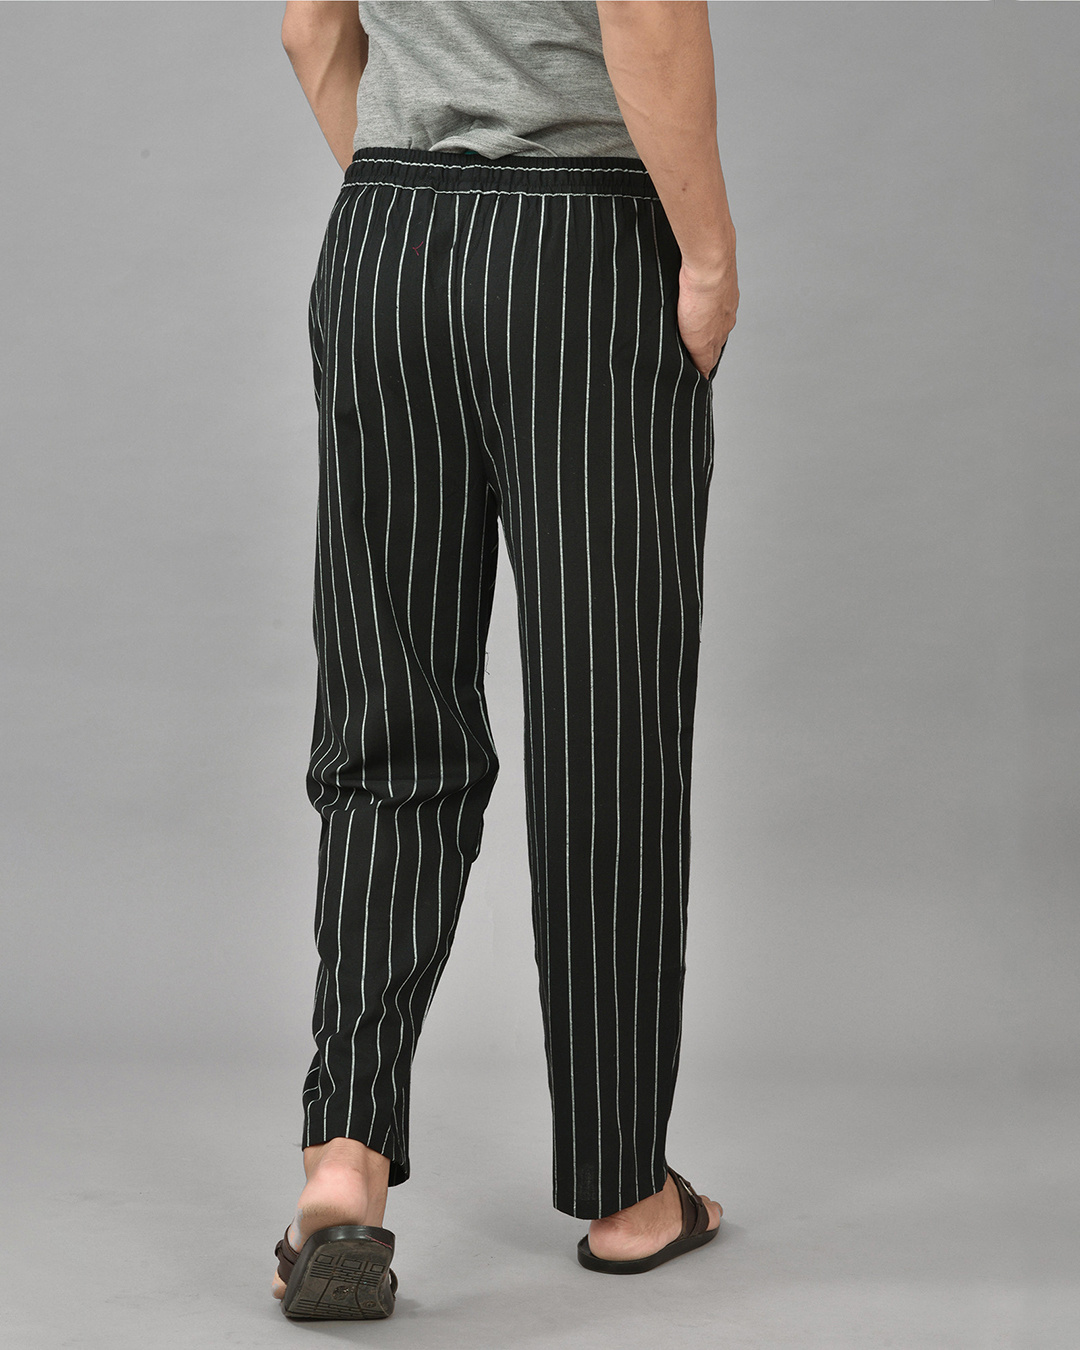 Buy Men Black  White Slim Fit Striped Regular Trousers online  Looksgudin